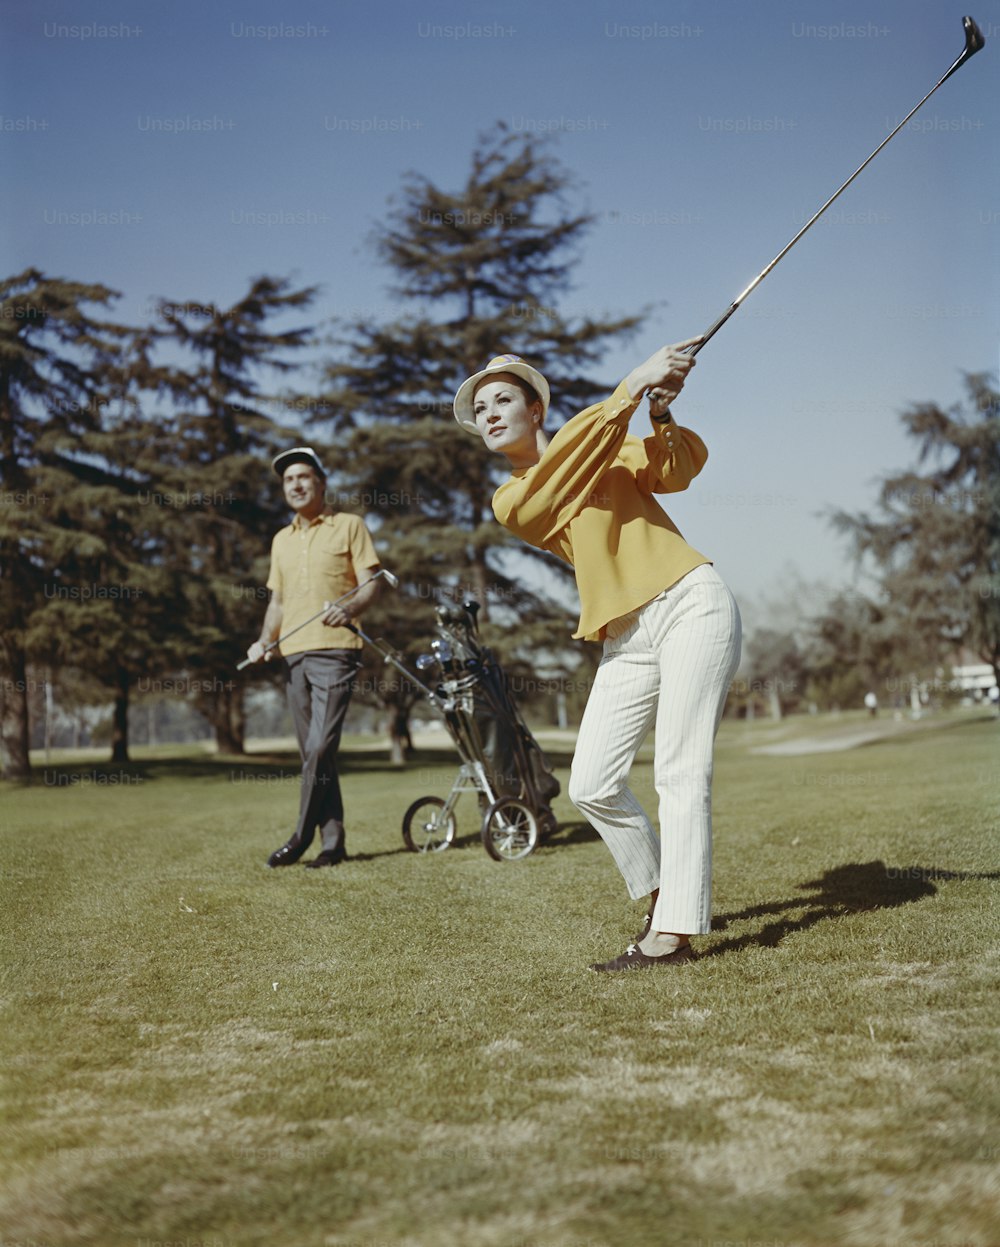 a man swinging a golf club on a field